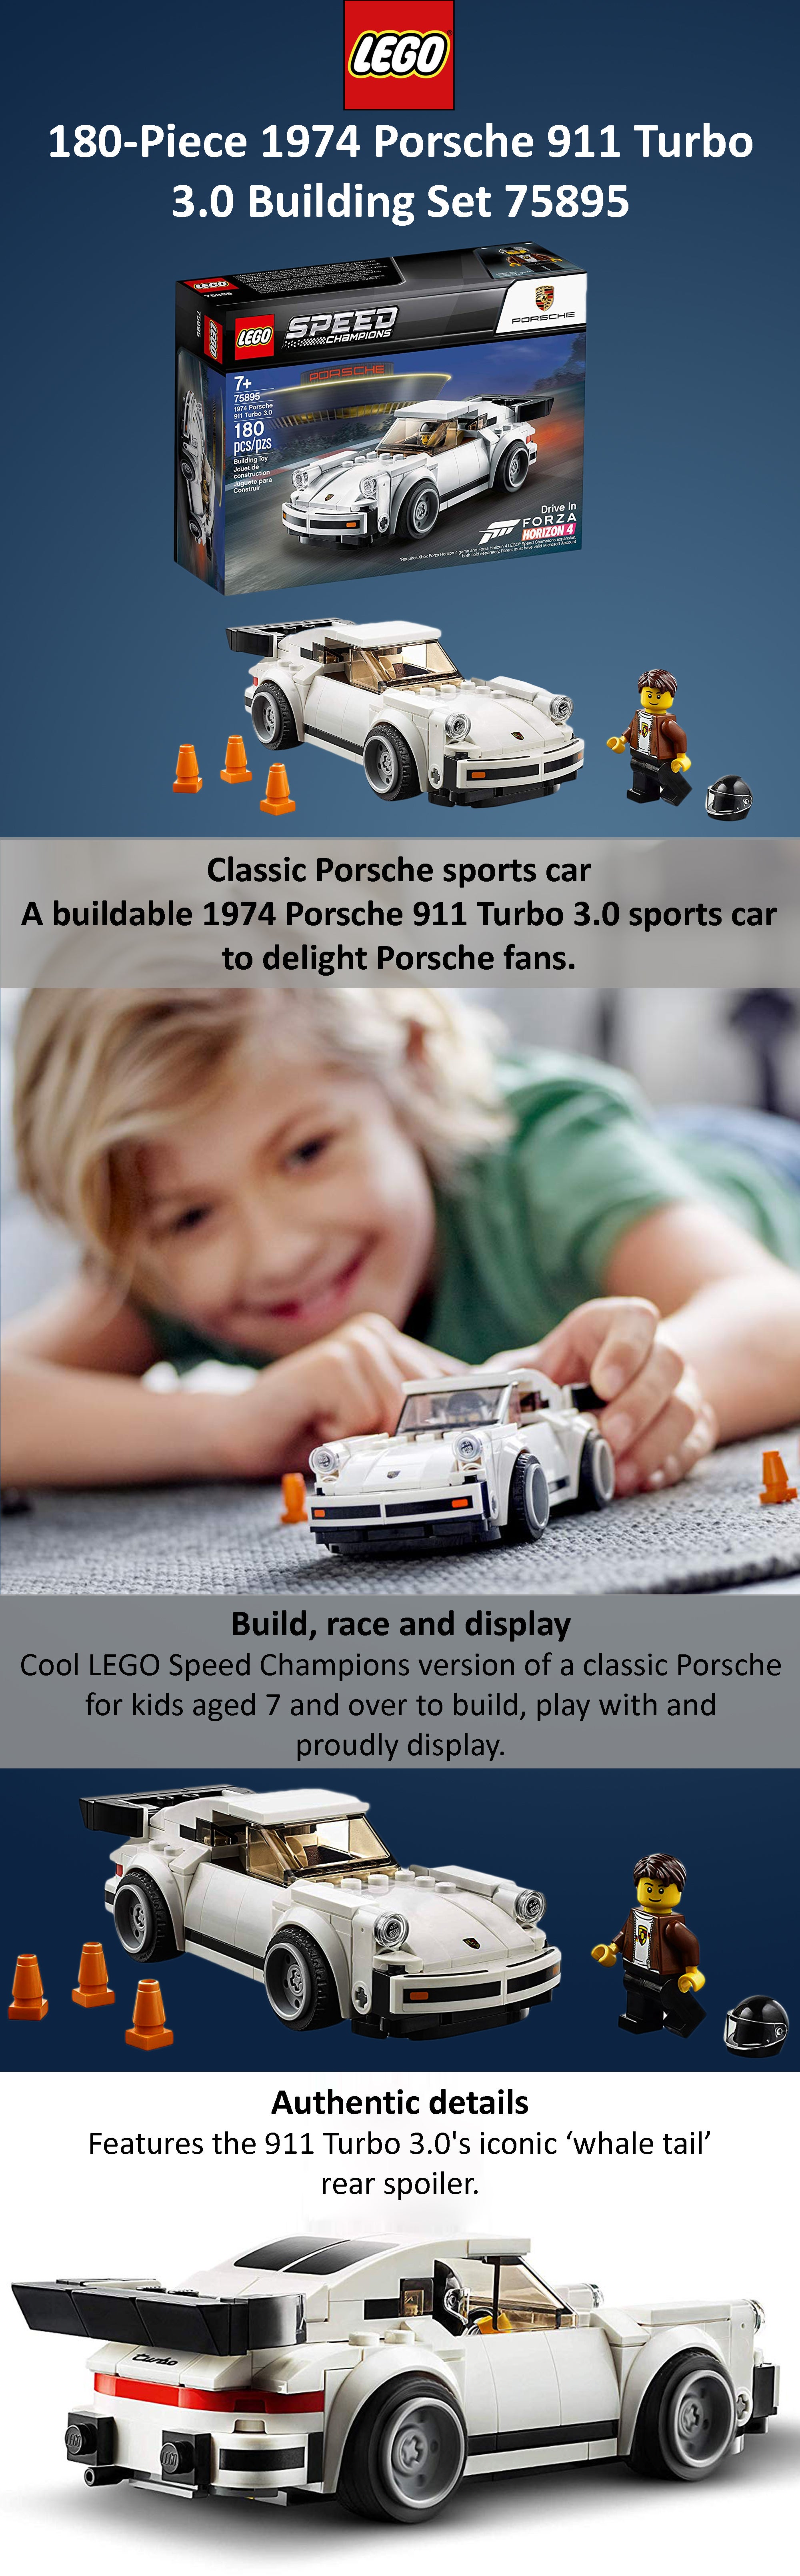 180-Piece 1974 Porsche 911 Turbo 3.0 Building Set 75895 Multicolour 19.1 x 14.1 x 6.1cm